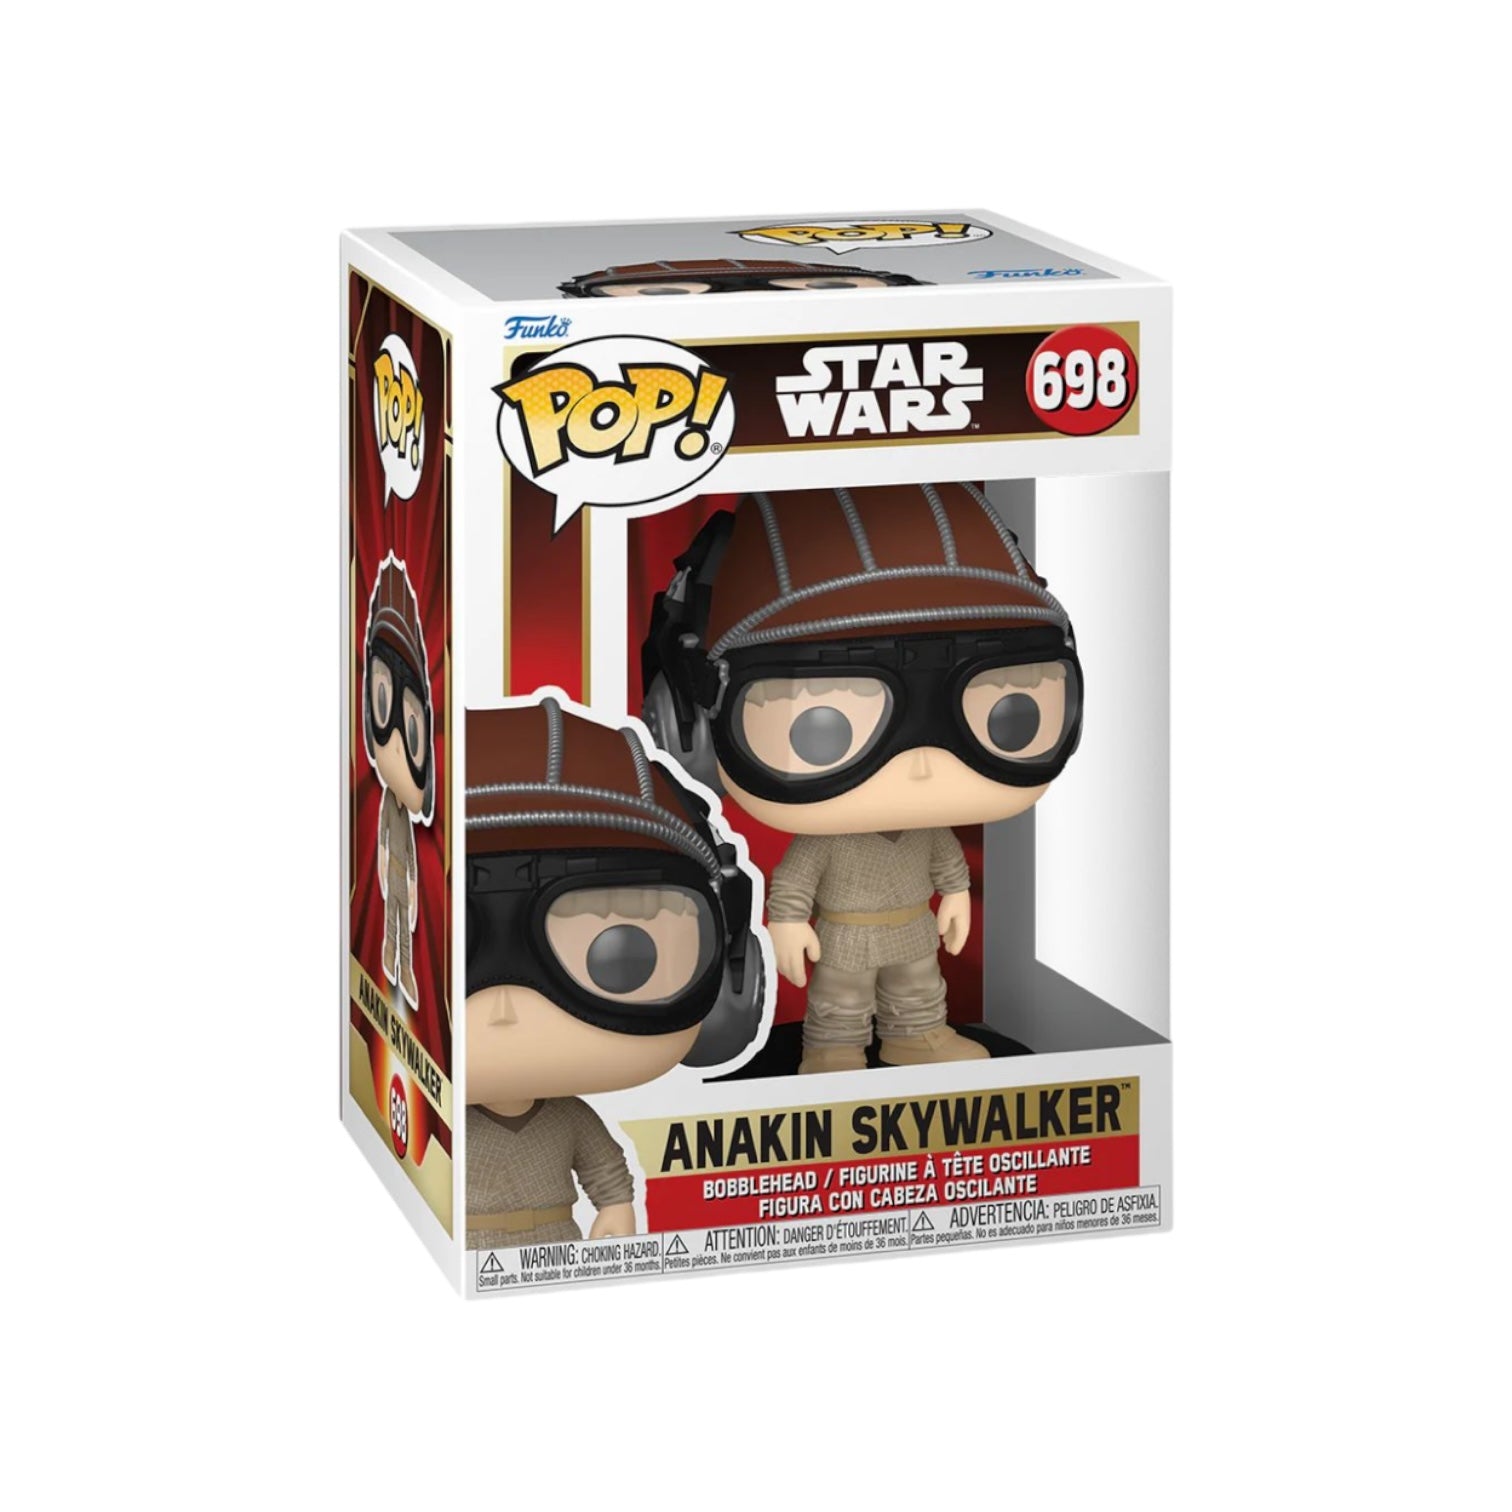 Anakin Skywalker #698 Funko Pop! Star Wars - PREORDER